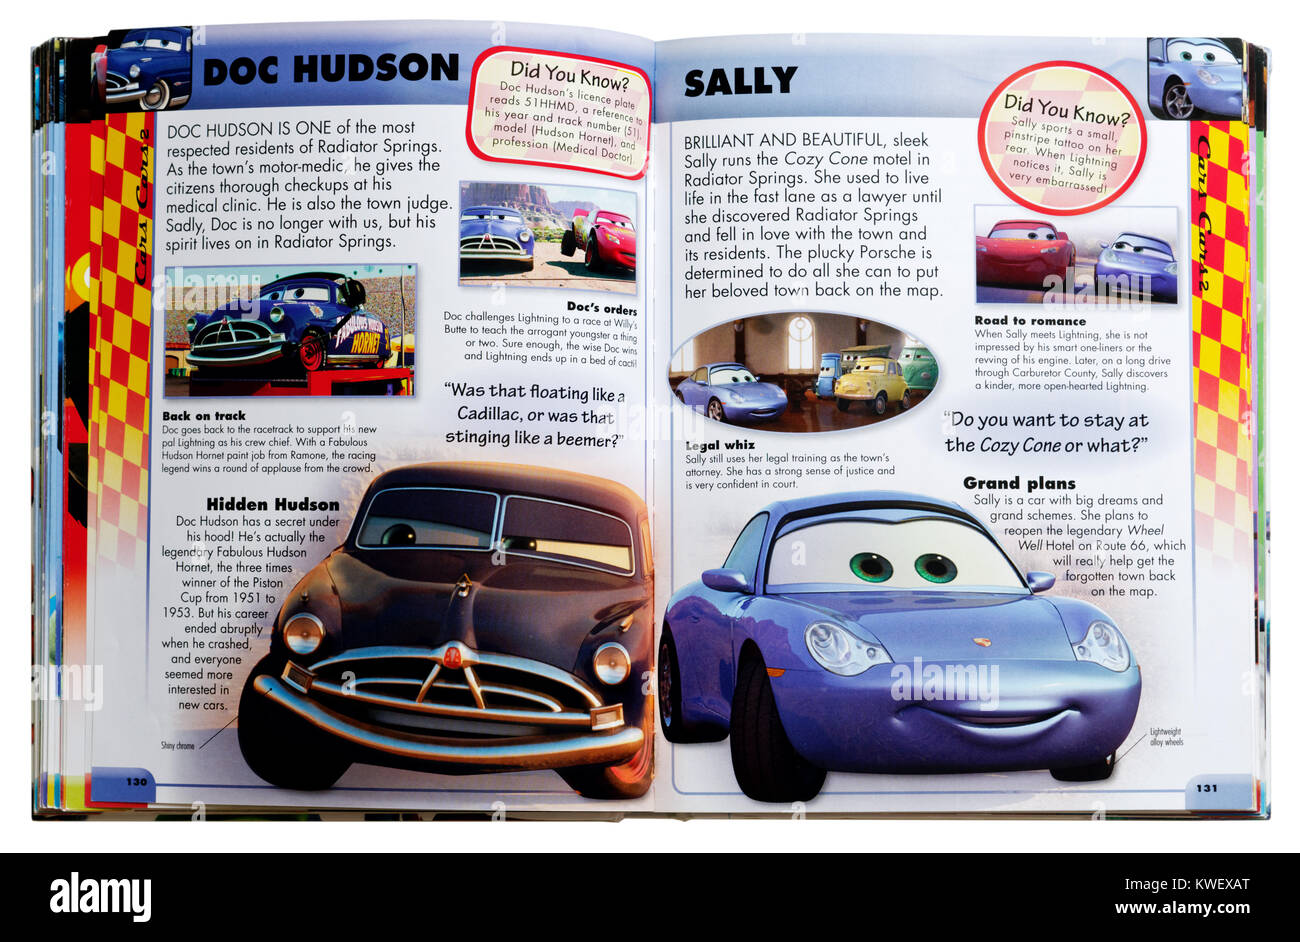 Personnages Pixar Doc Hudson et Sally du film Pixar Cars dans un guide des personnages Banque D'Images